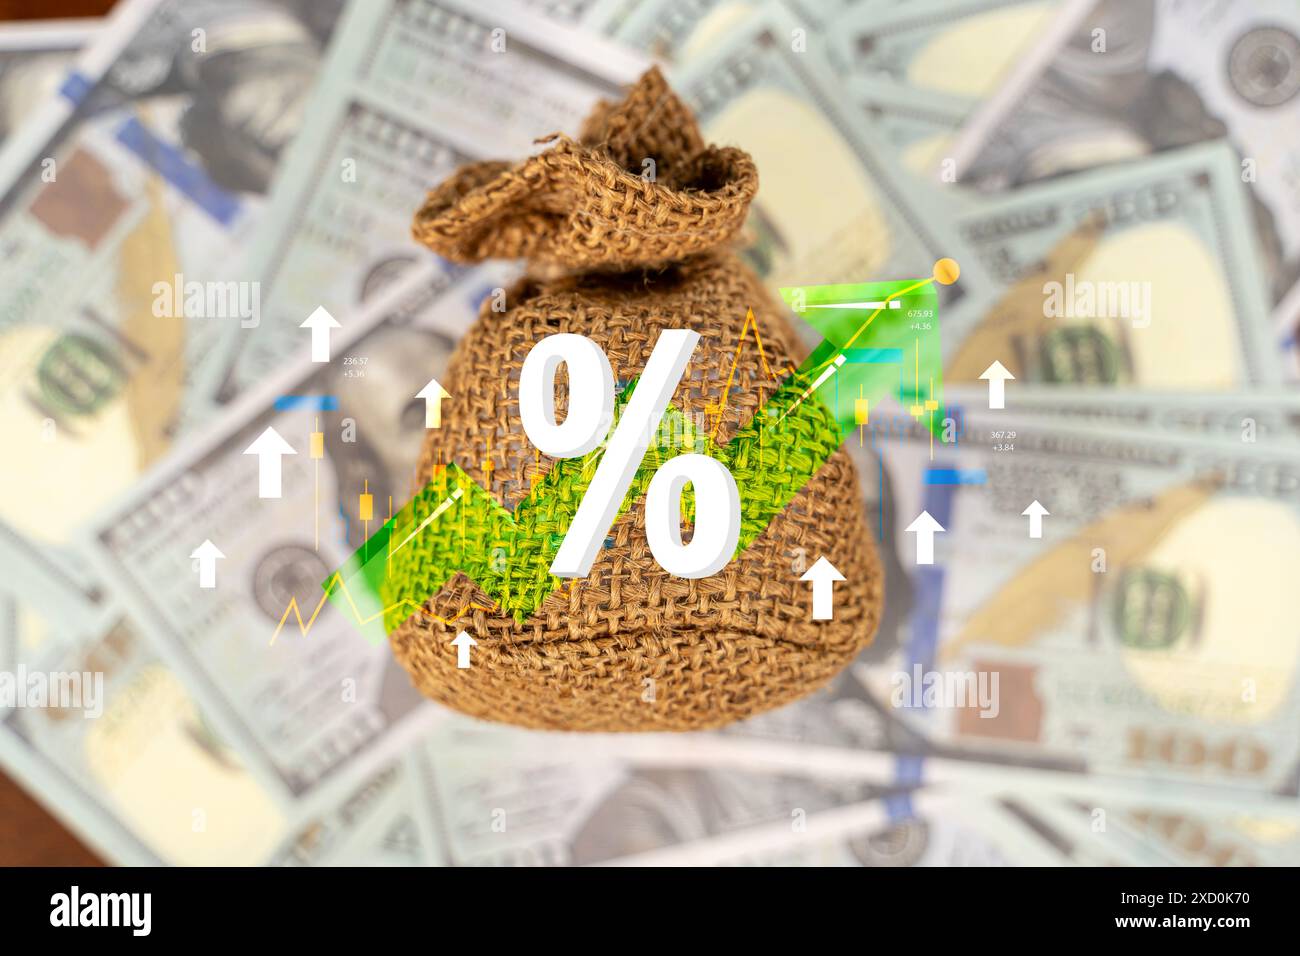 Concetto di tasso di interesse e dividendo. Un sacchetto con logo verde e bianco con una freccia verde e un segno di percentuale. Foto Stock